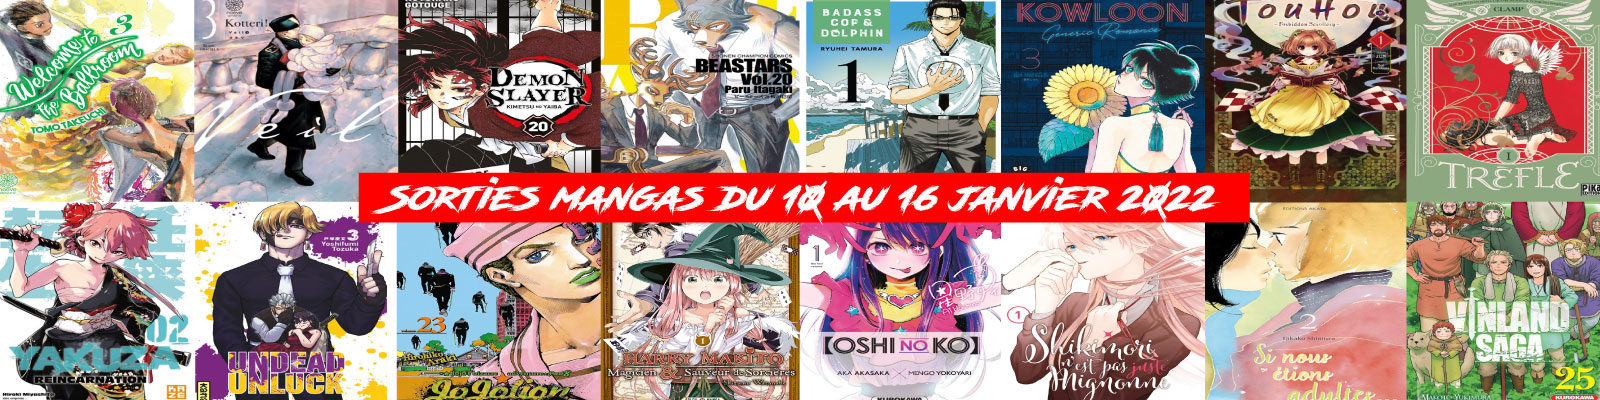 Sorties mangas-du-10-au-16-janvier-2022